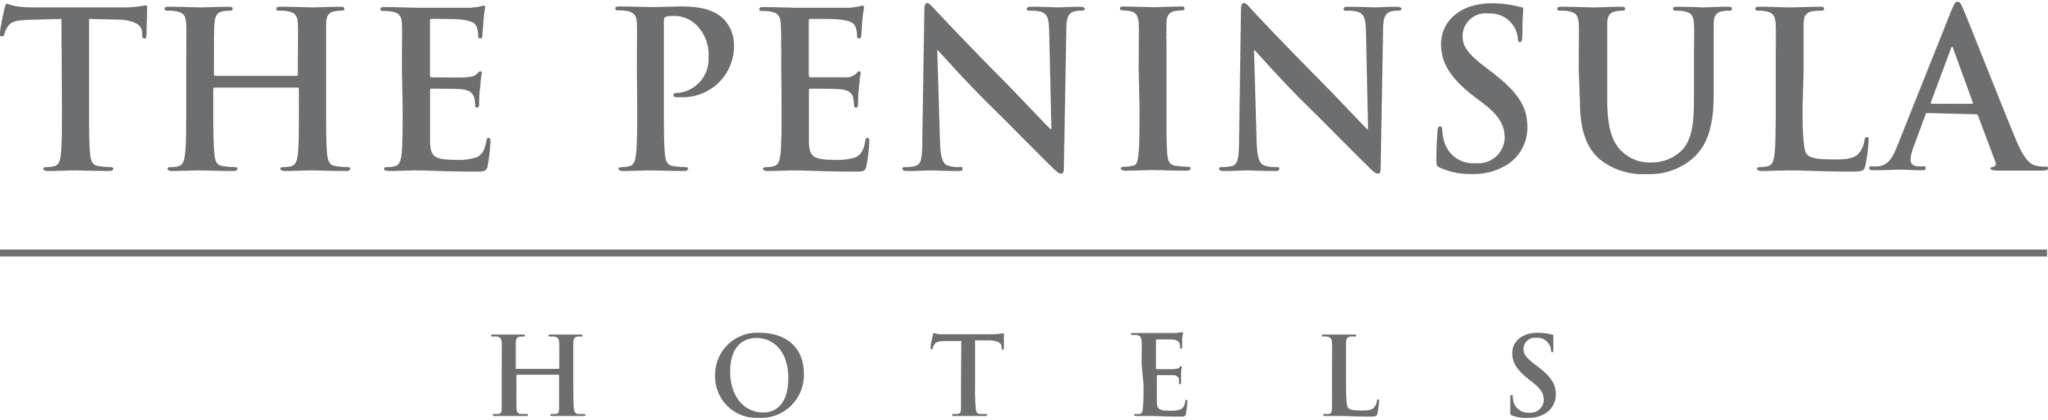 Logo de l'hôtel Peninsula